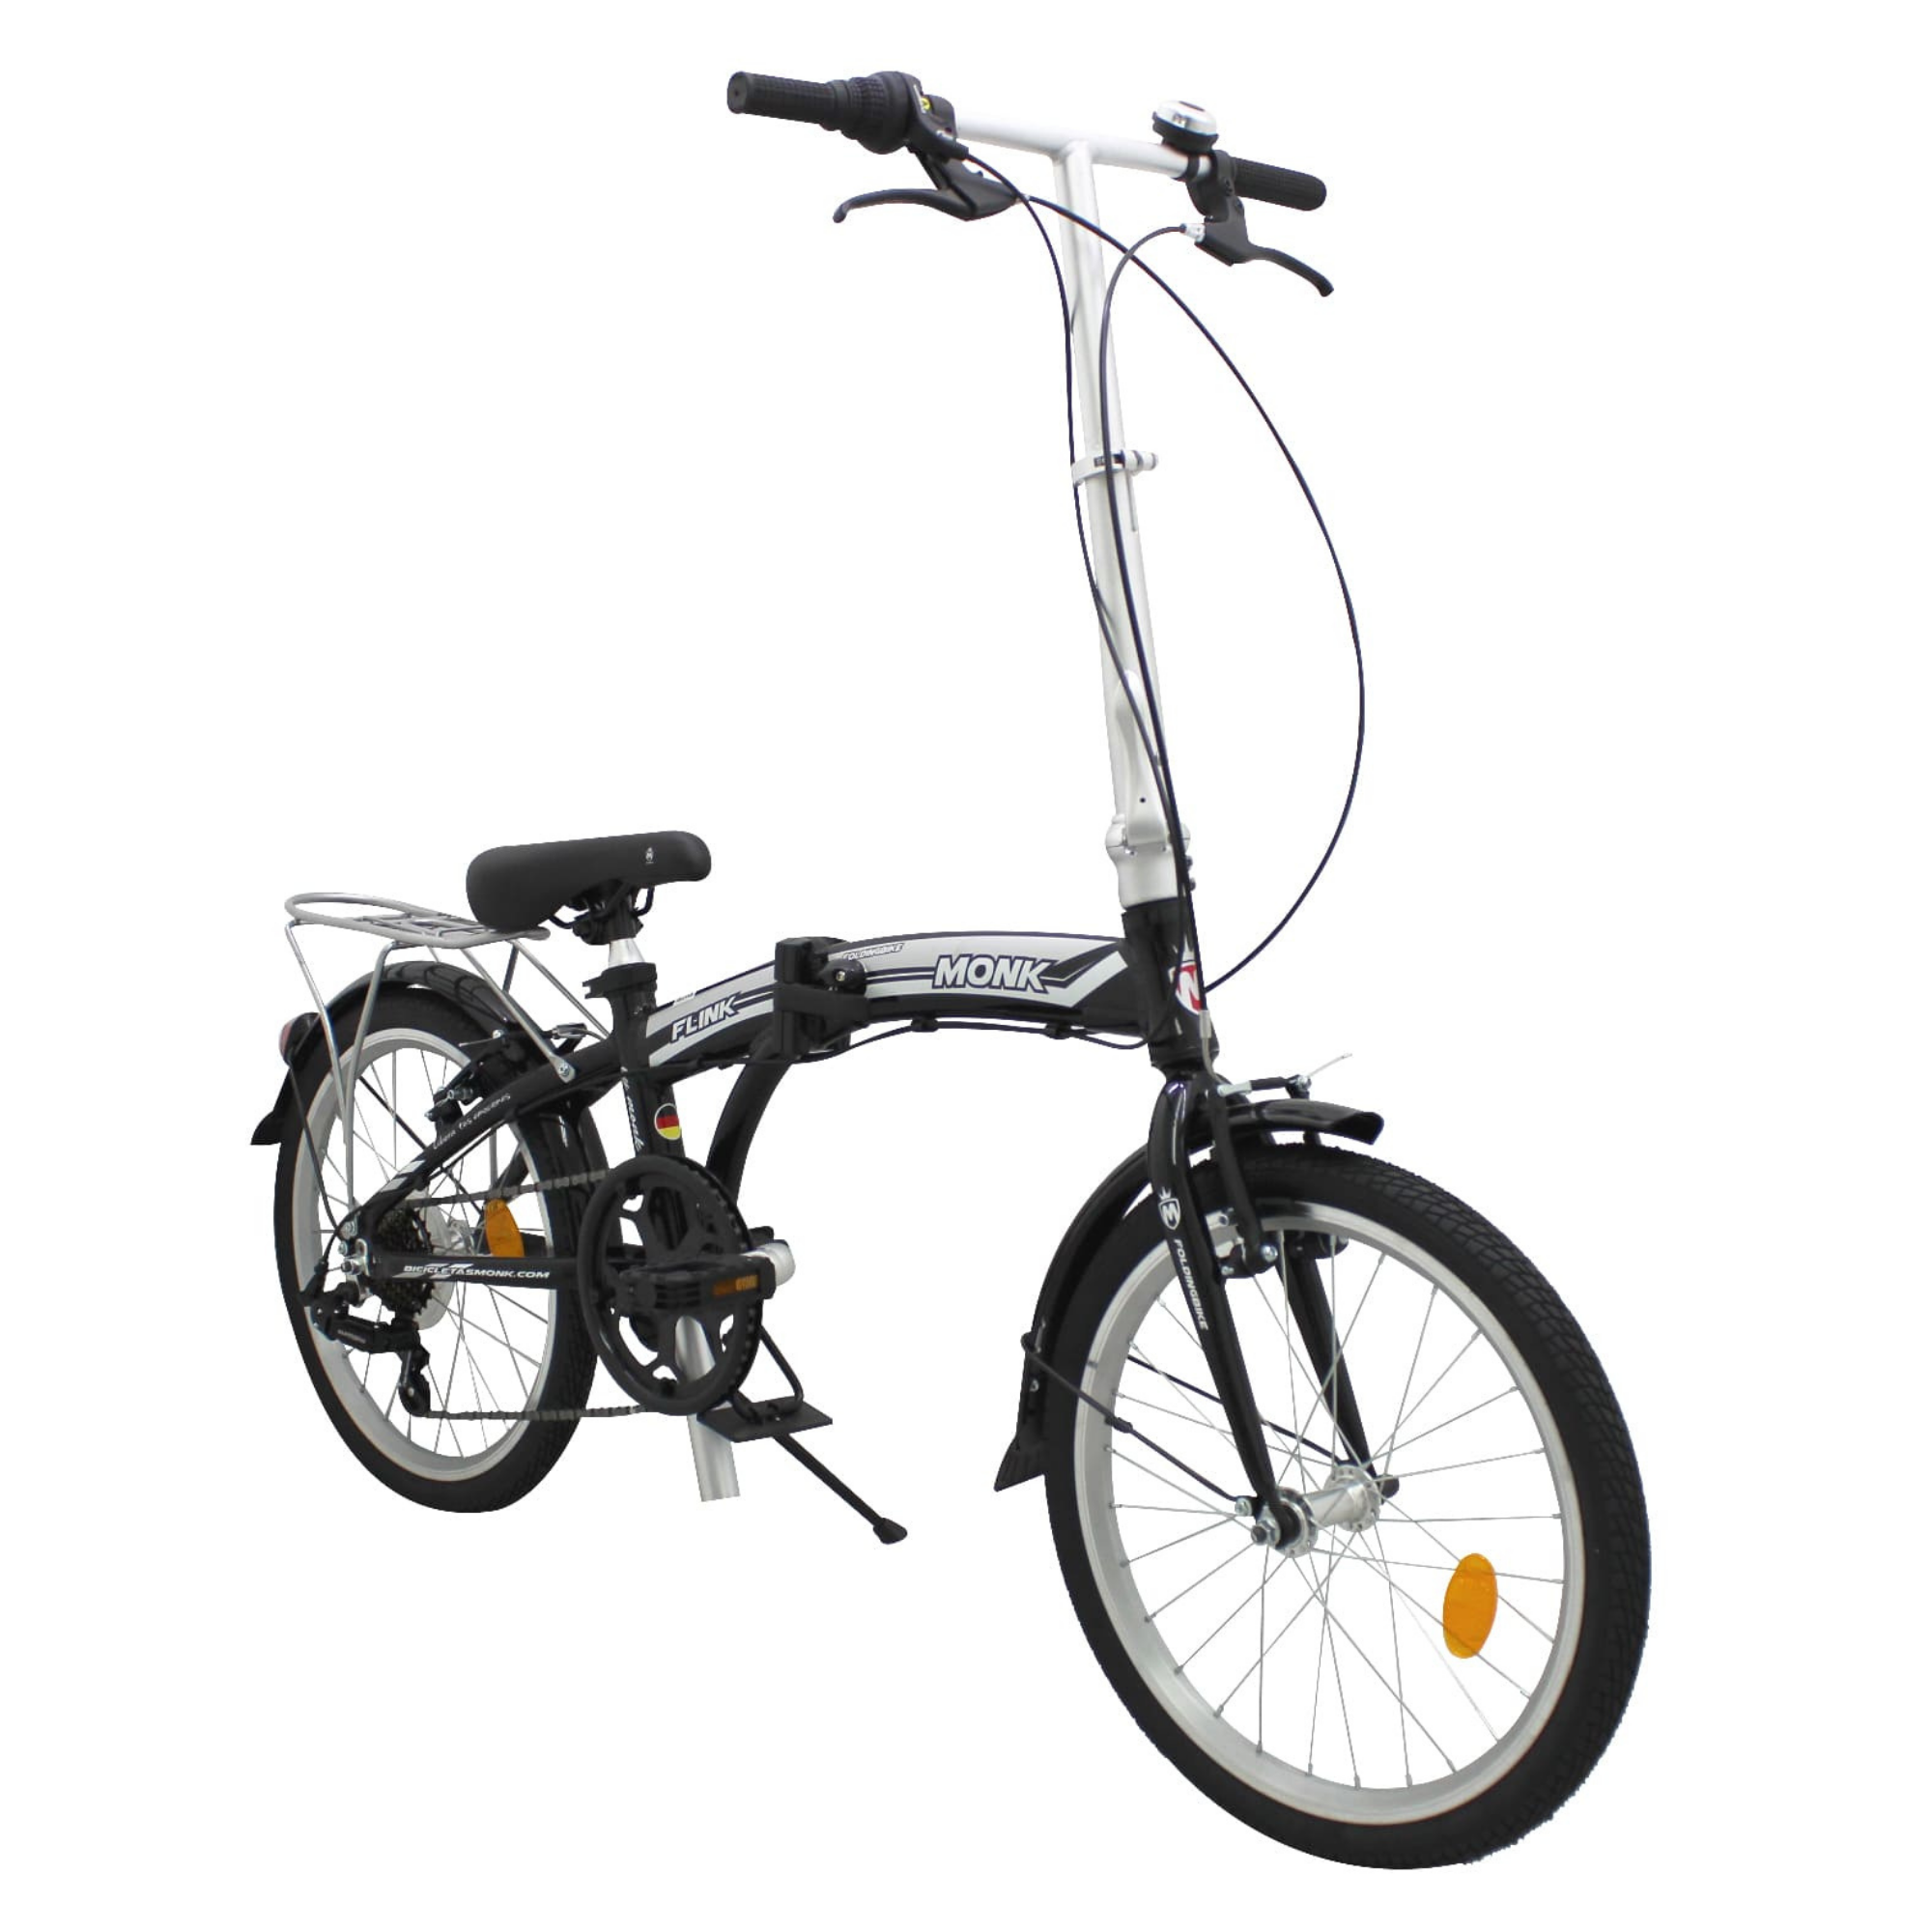 Bicicleta Urbana Plegable Rodada 20 Monk Flink